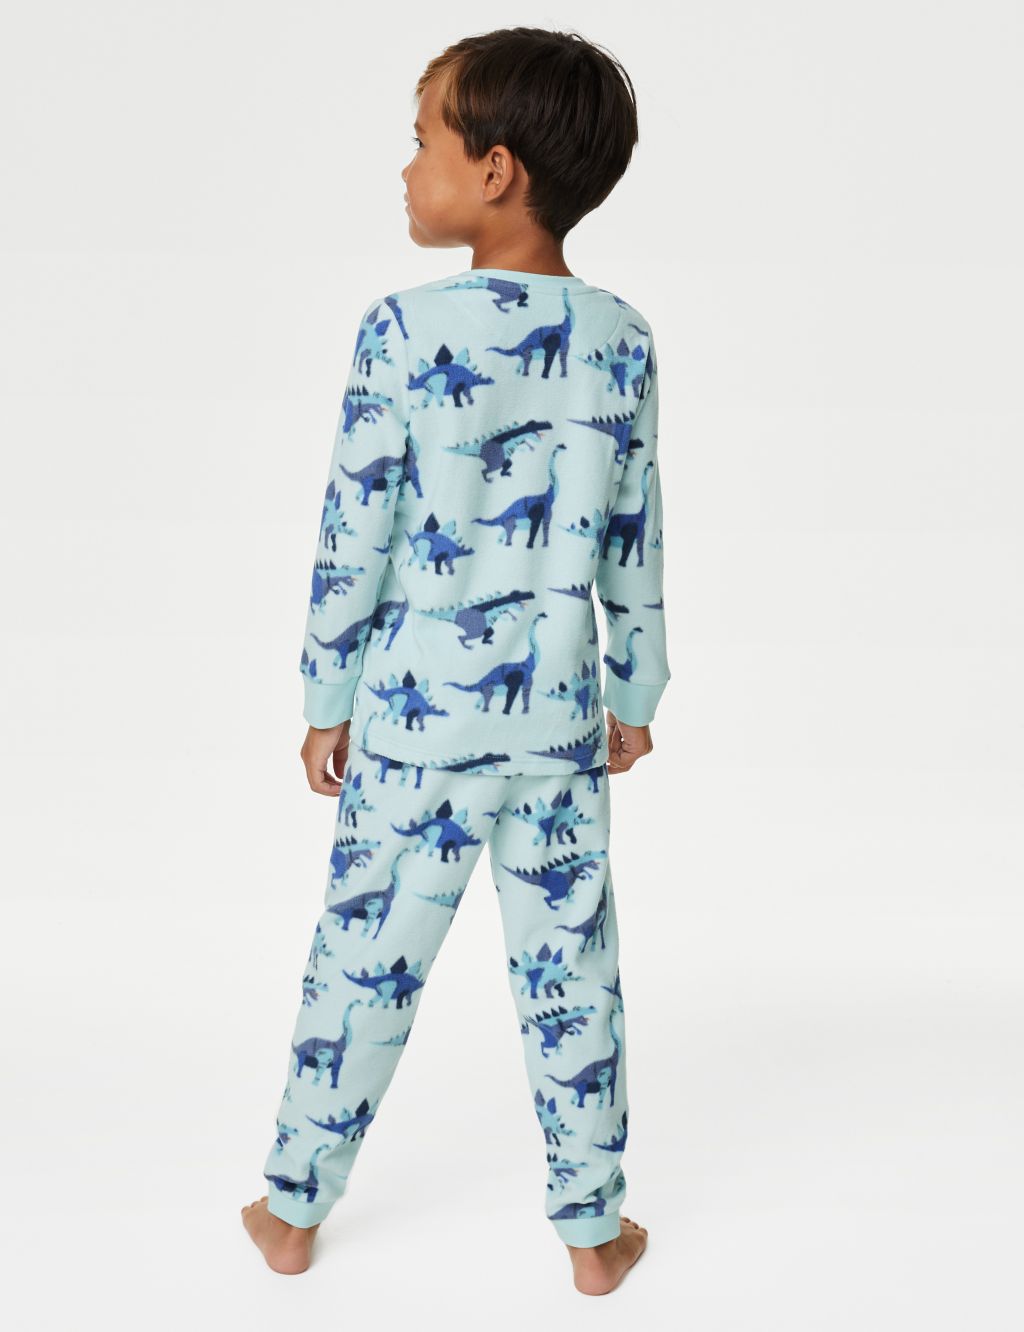 Fleece Dinosaur Pyjamas (1-8 Yrs) image 3